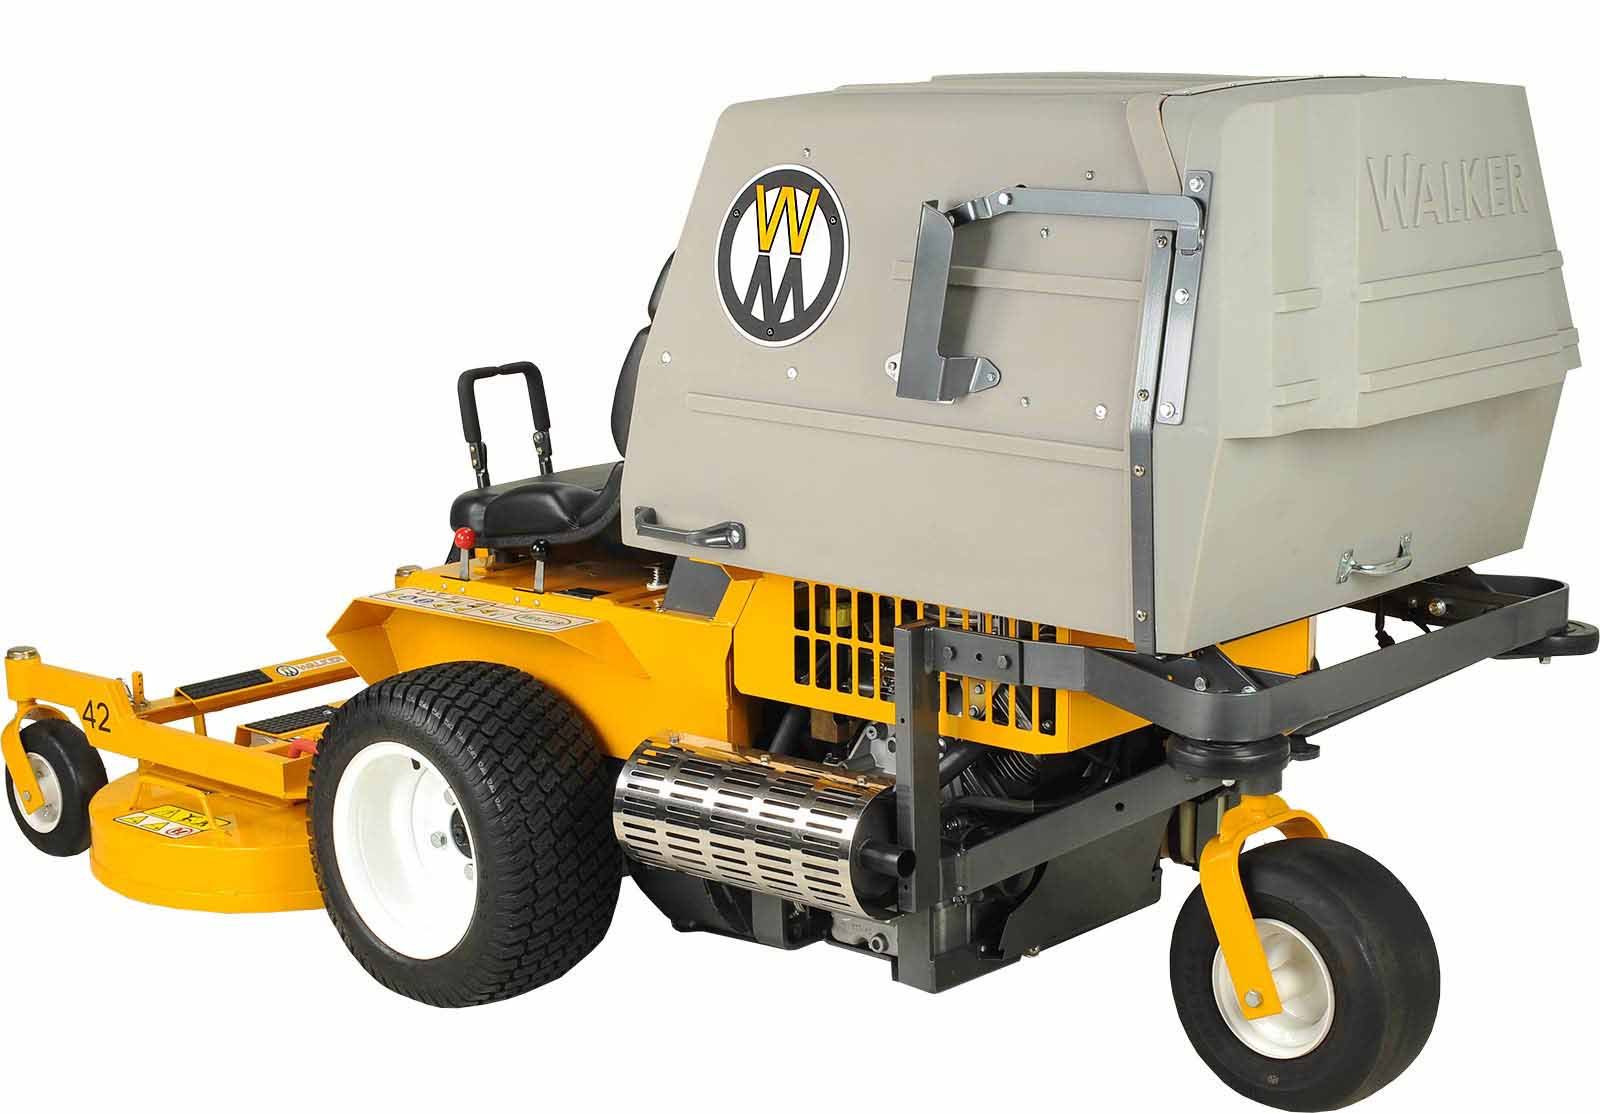 Walker Mowers MC19 Grass-Handling Gas Mower 19HP